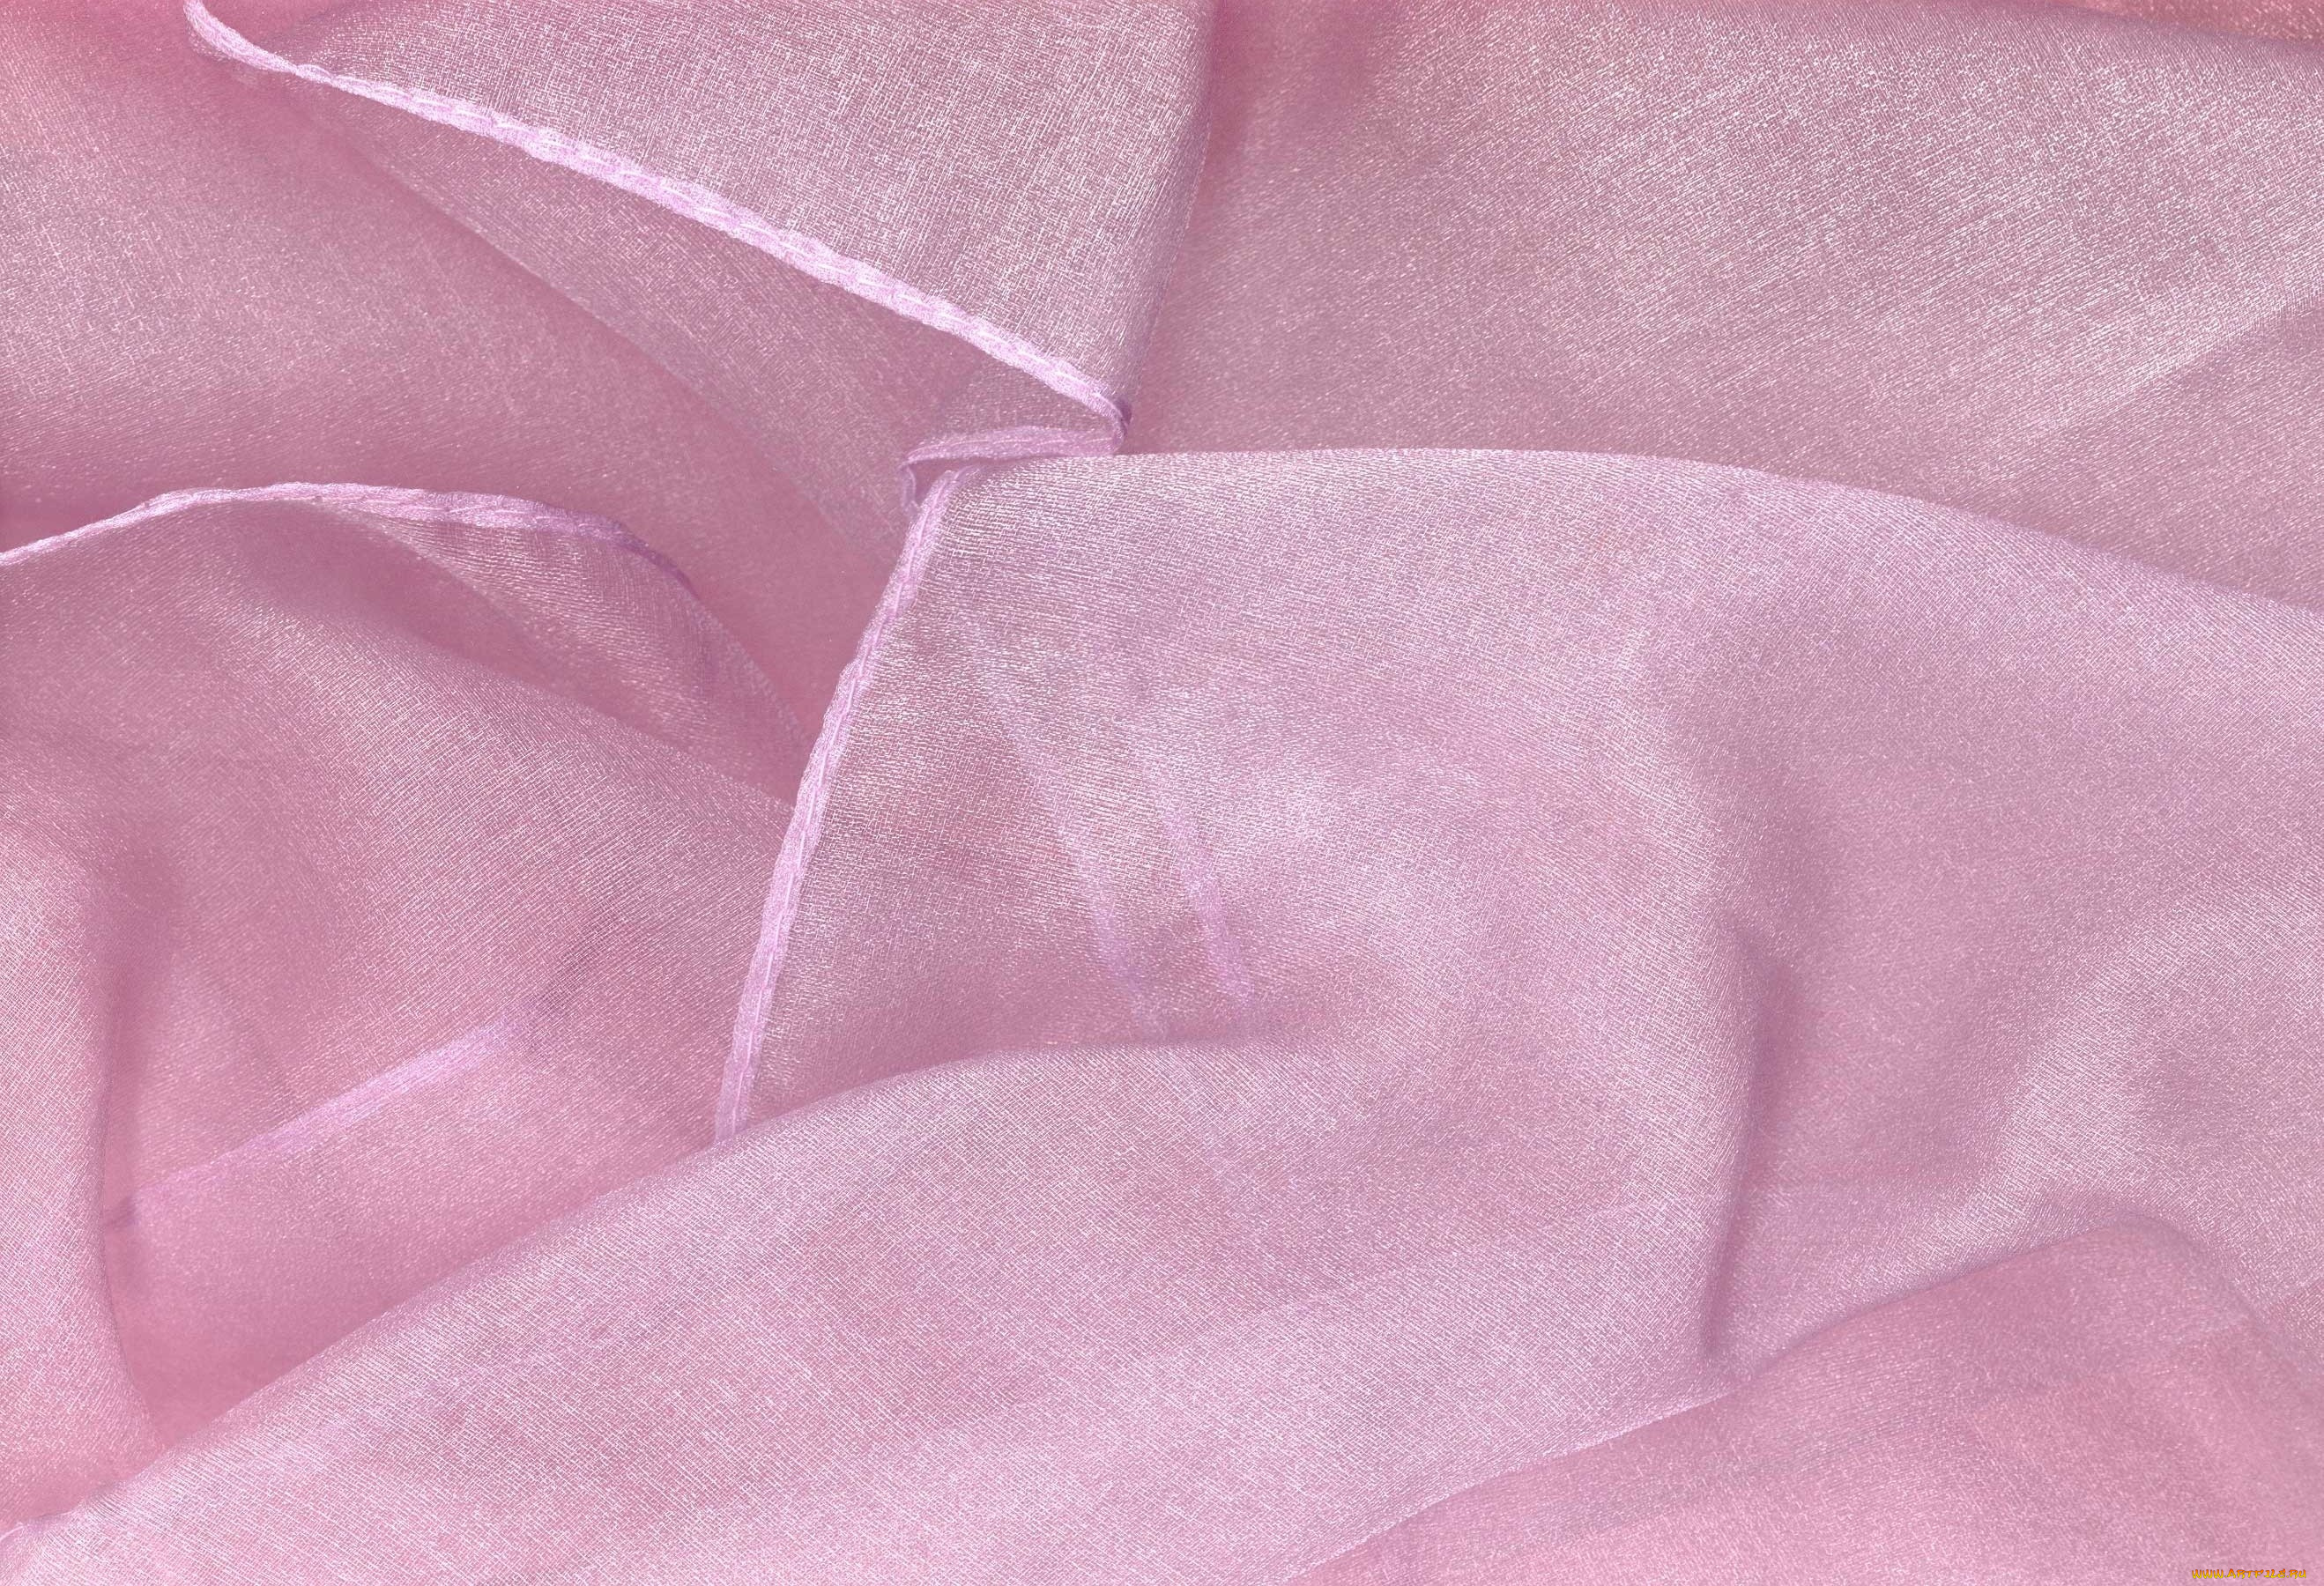 разное, текстуры, складки, прозрачная, светлая, розовая, ткань